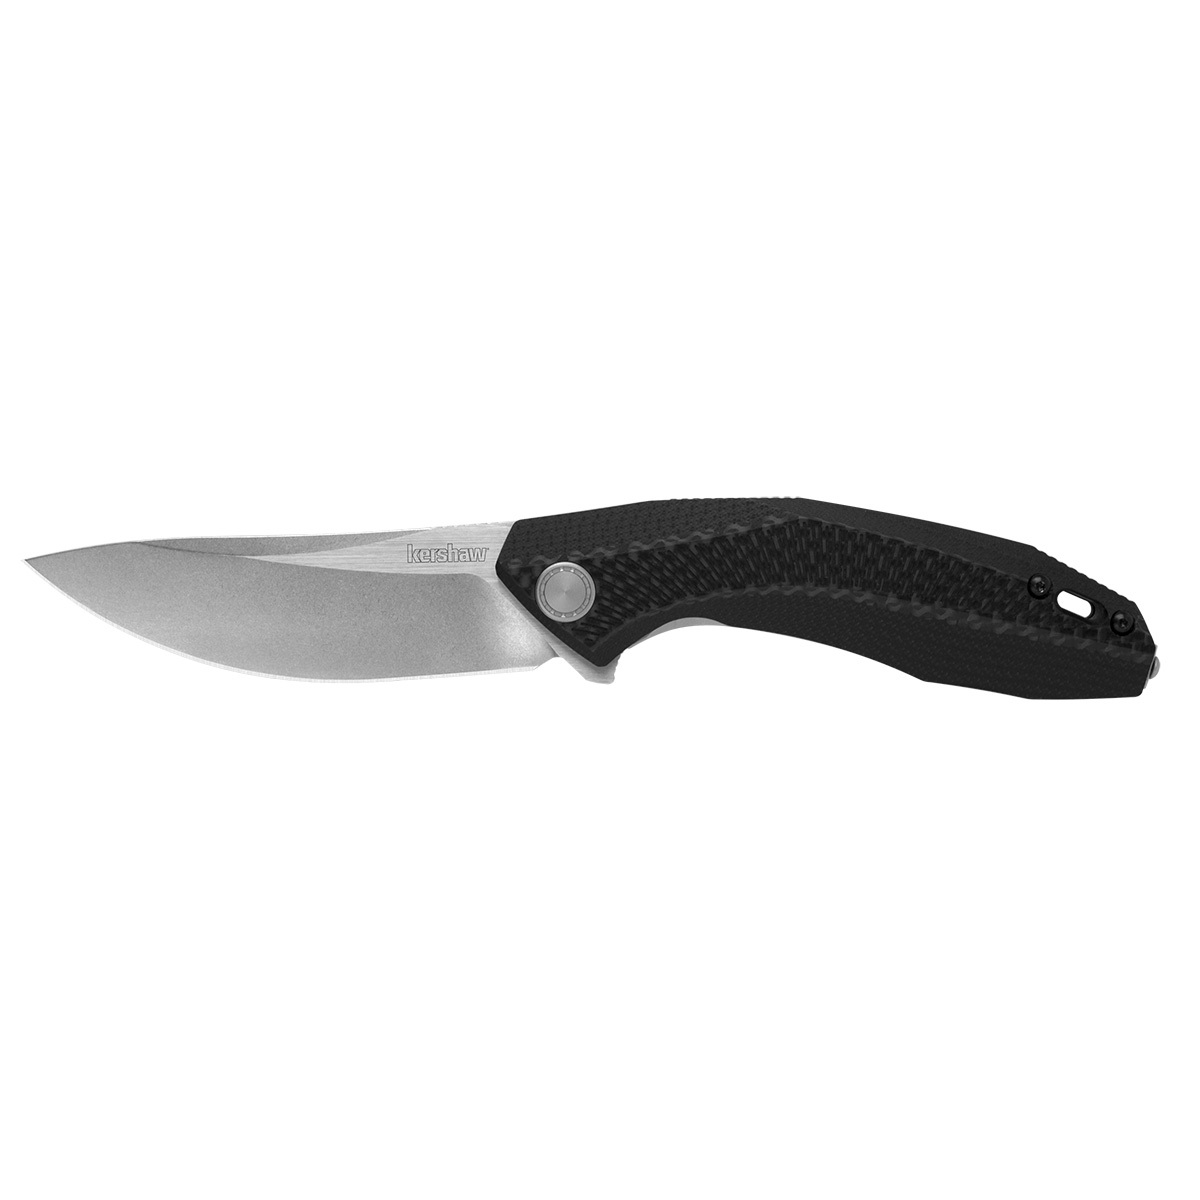 Складной нож Kershaw Tumbler K4038, сталь D2, рукоять G10/Carbon fiber carbon fiber nickel мареограф